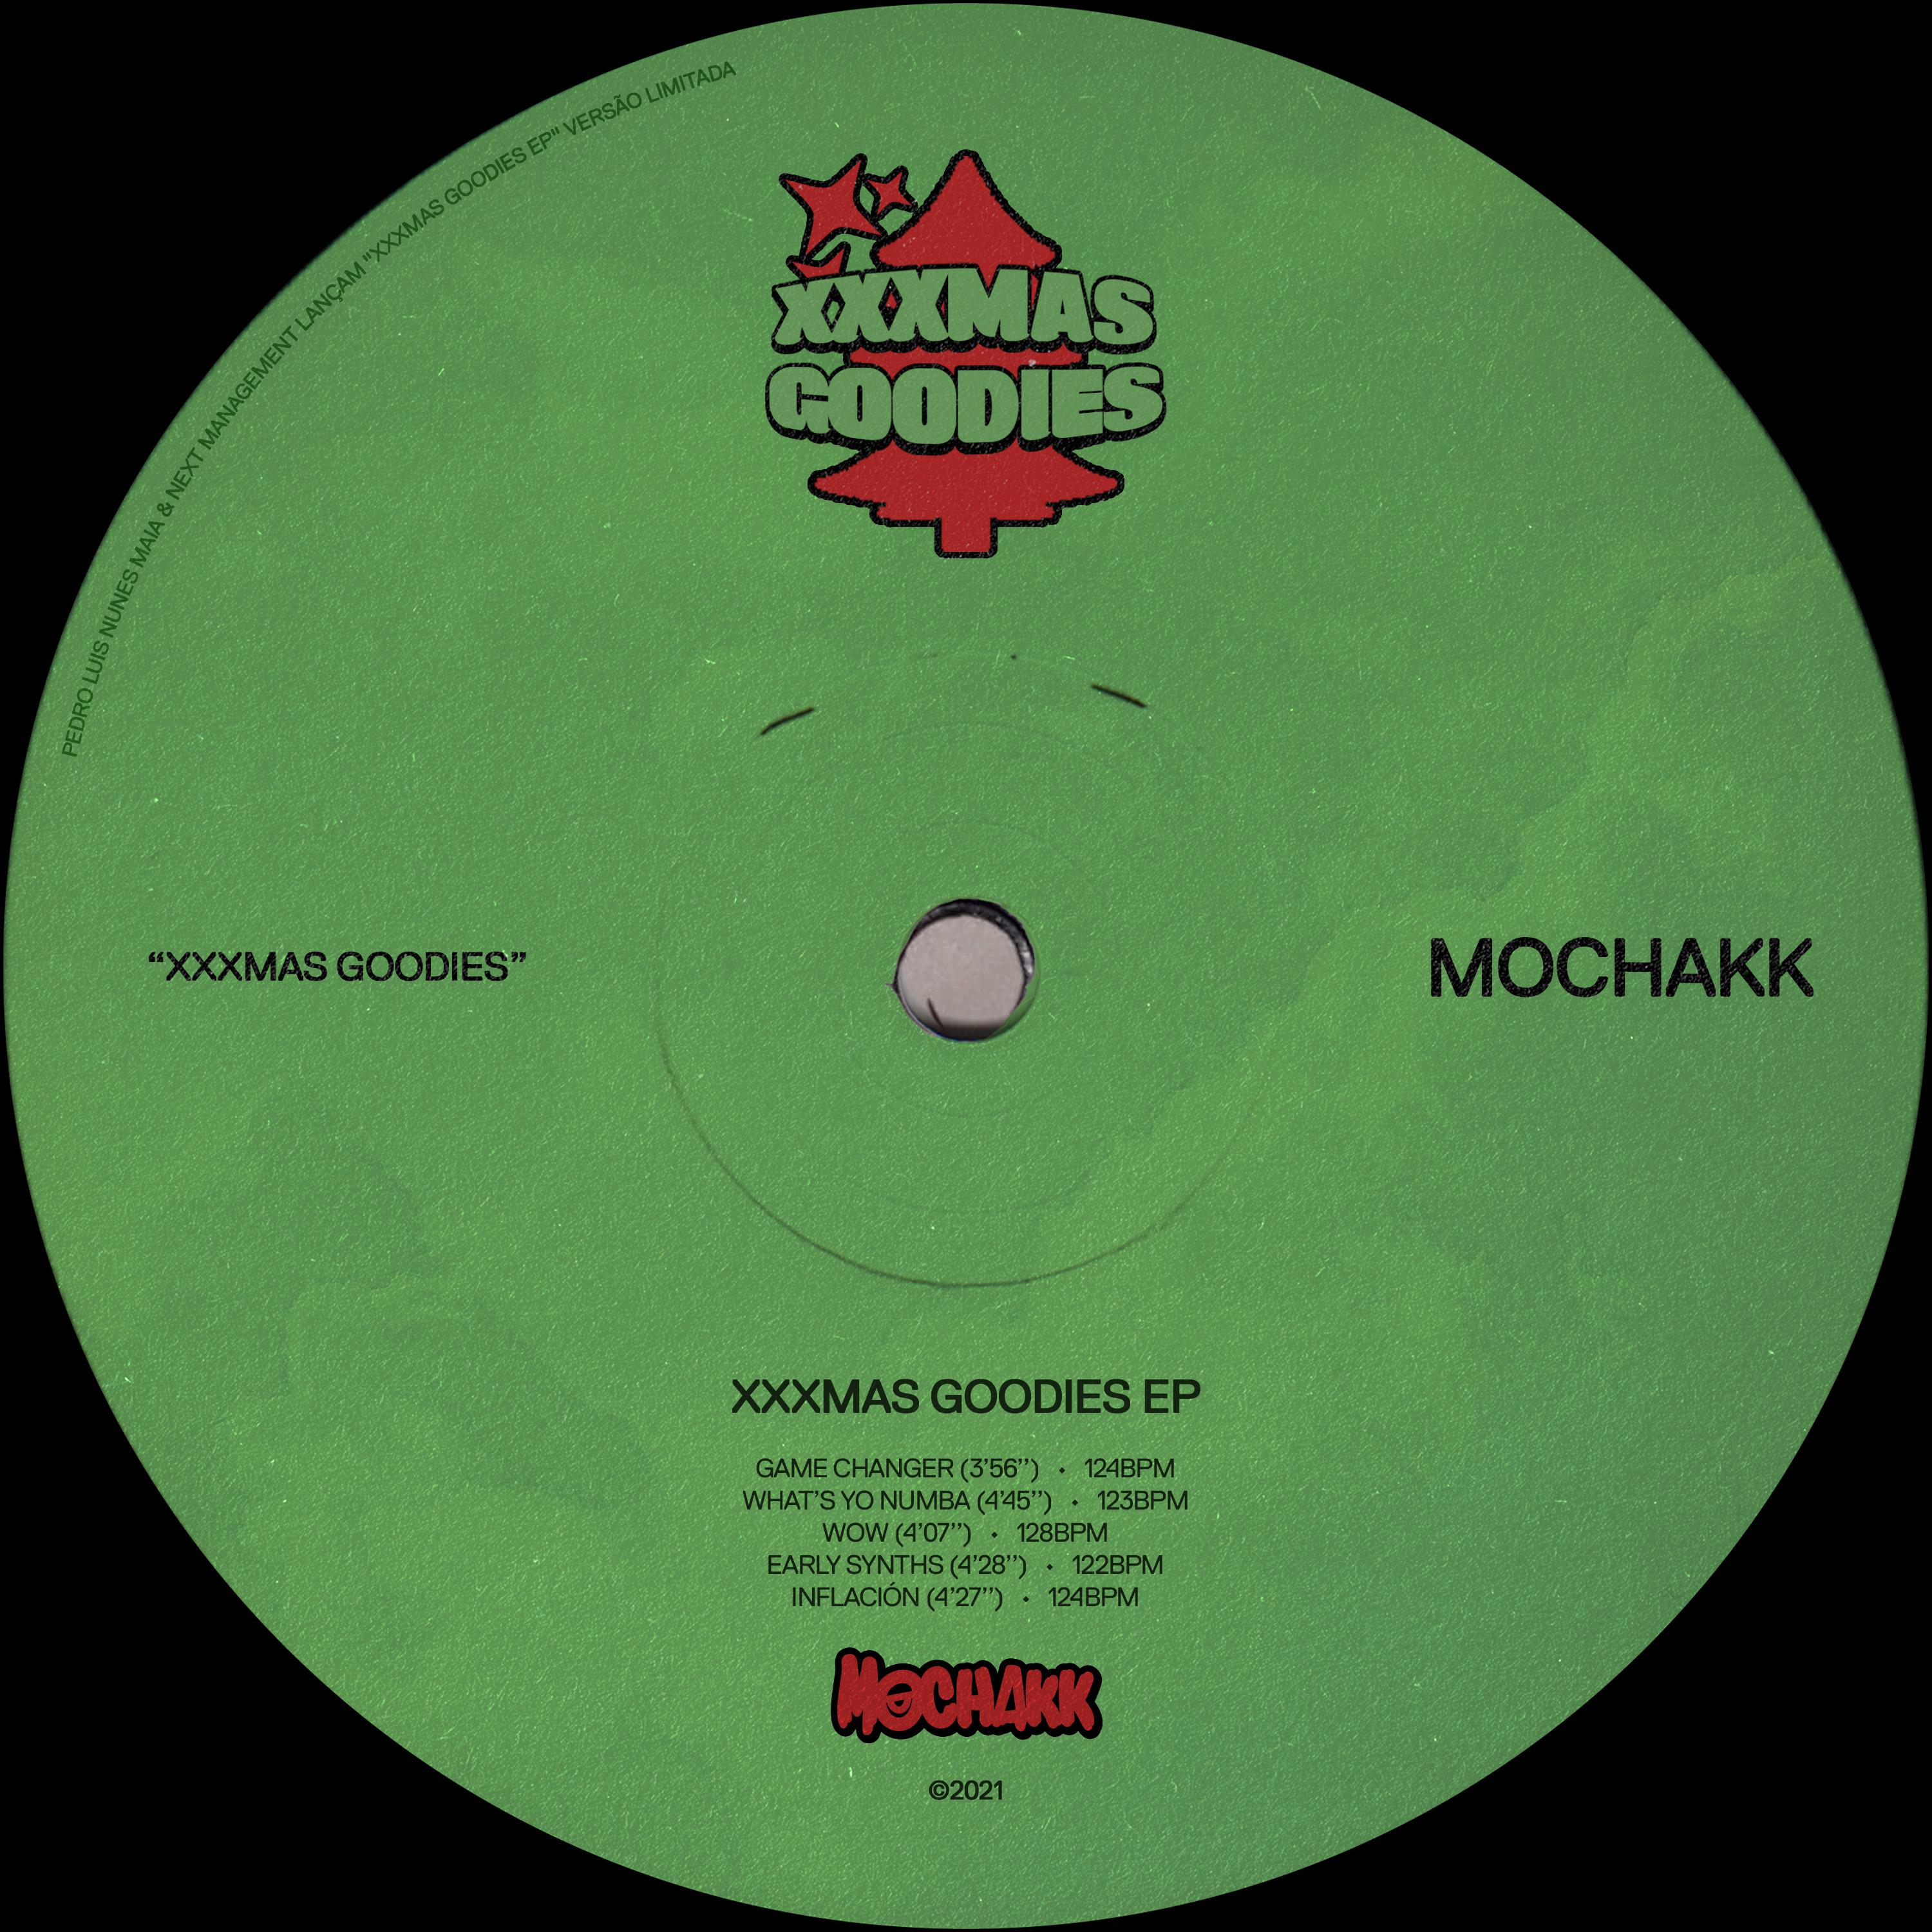 Mochakk - Early Synths